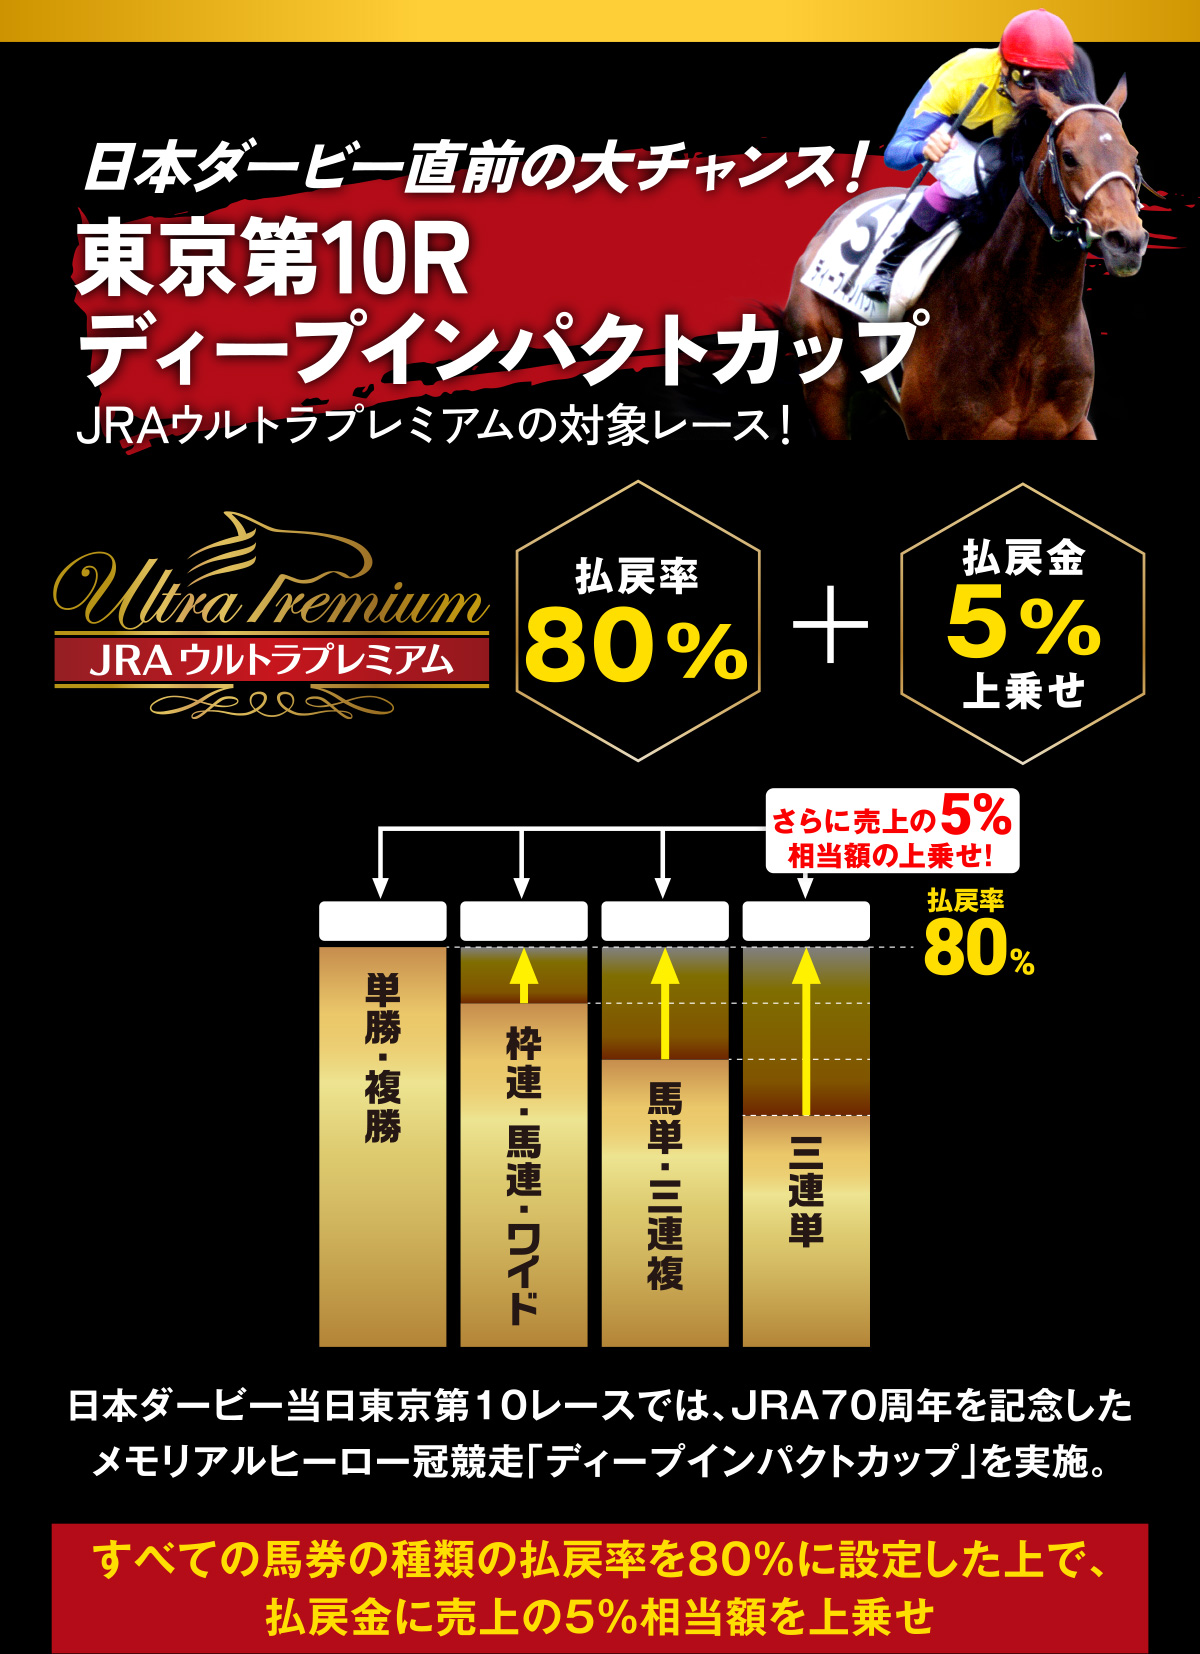 JRA日本ダービーキャンペーン | JRA